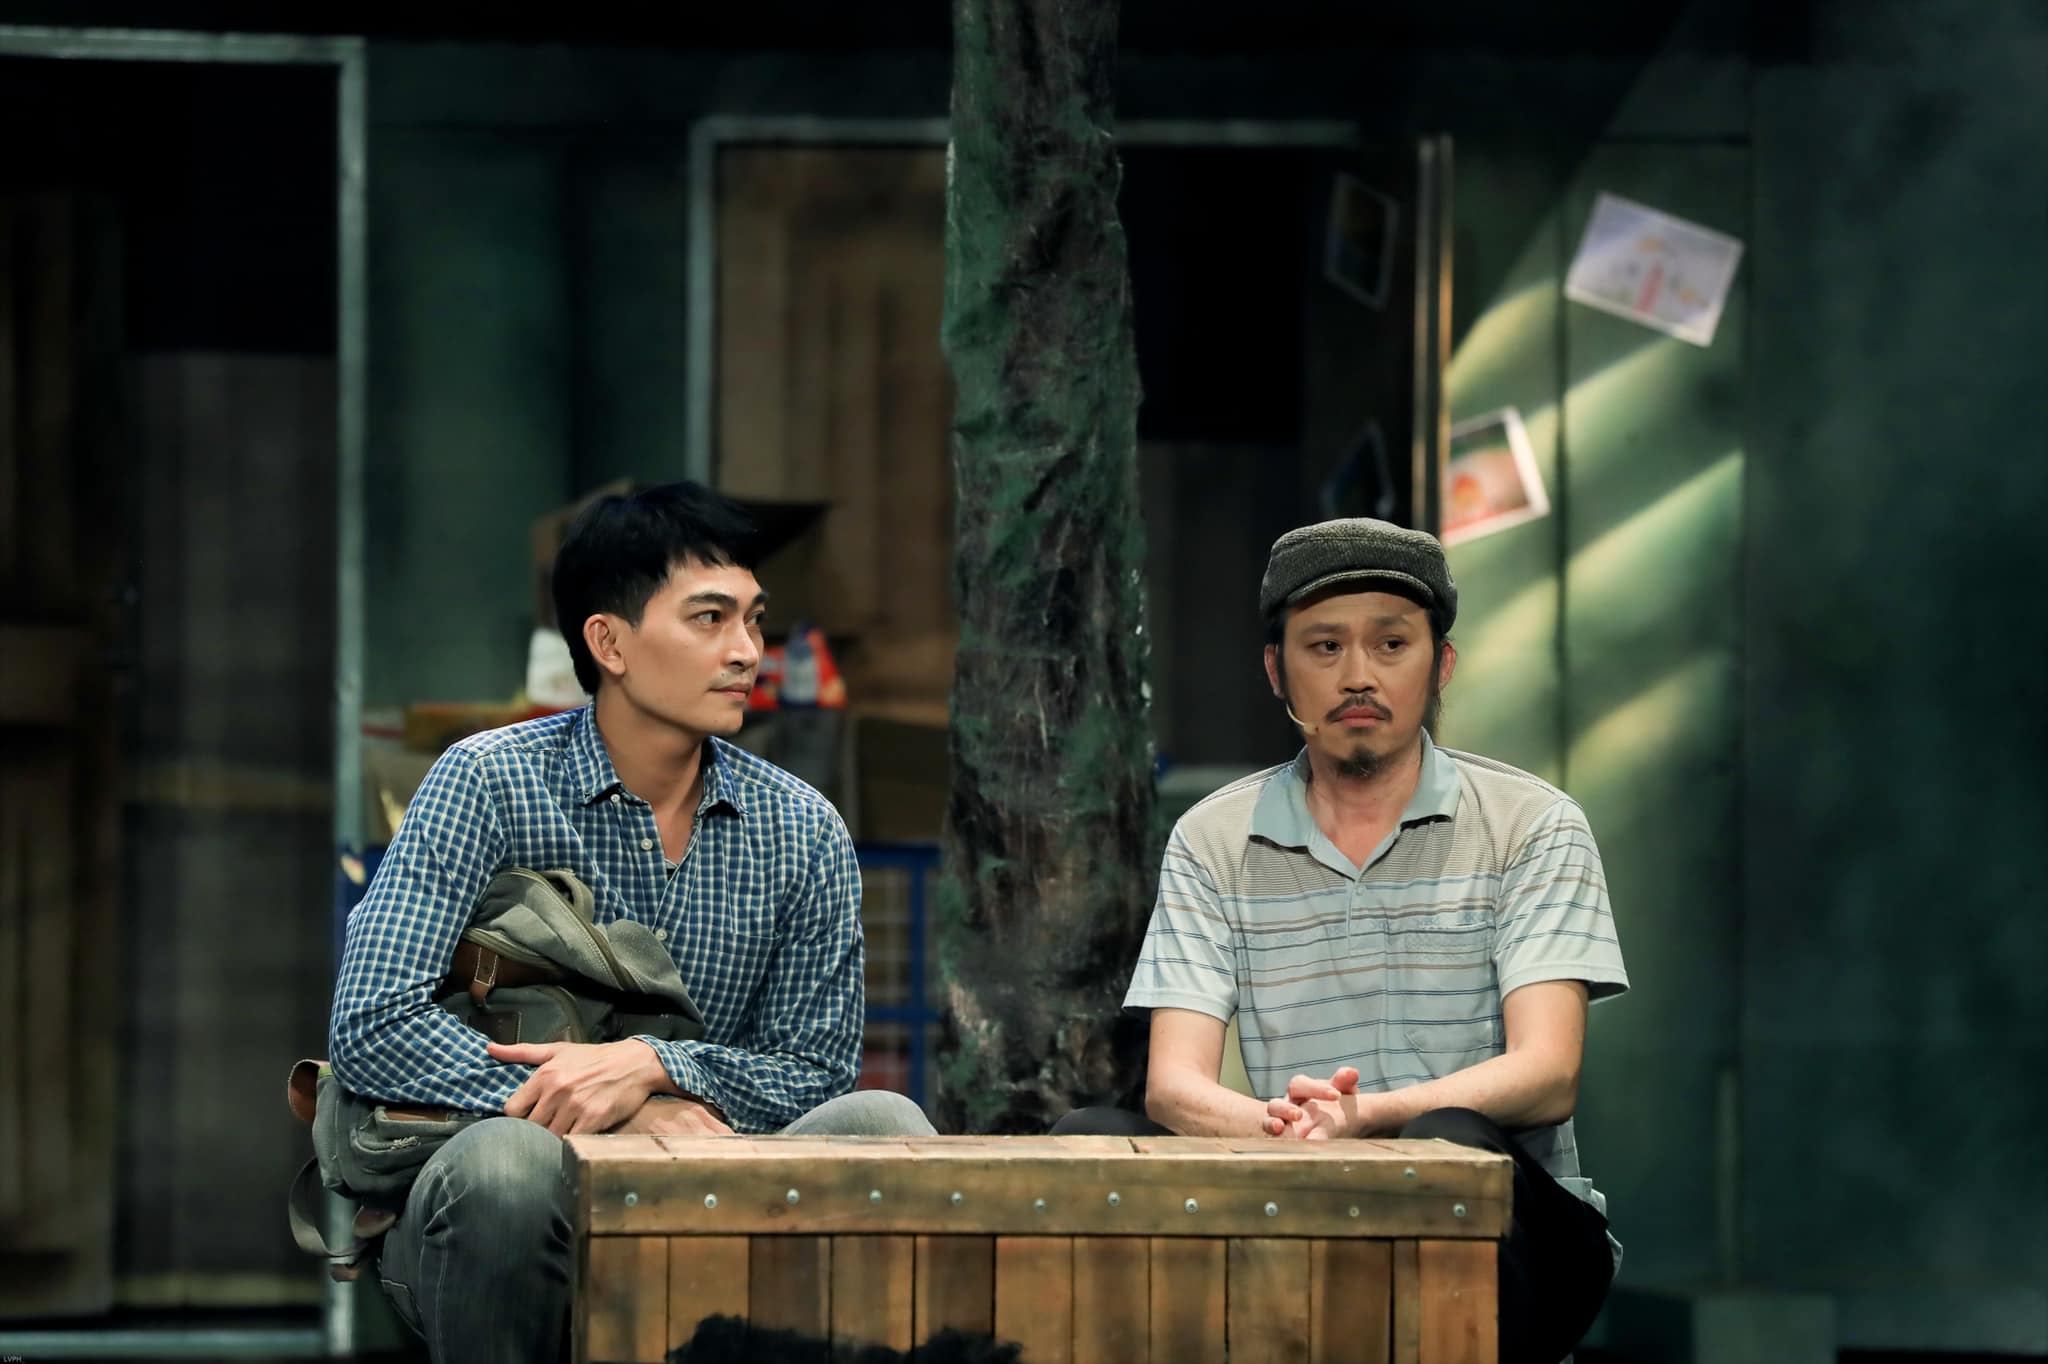 Loạt hình NSUT Hoài Linh trên sân khấu kịch ngày trở lại: Thần sắc tươi tắn, diễn xuất thần - ảnh 3